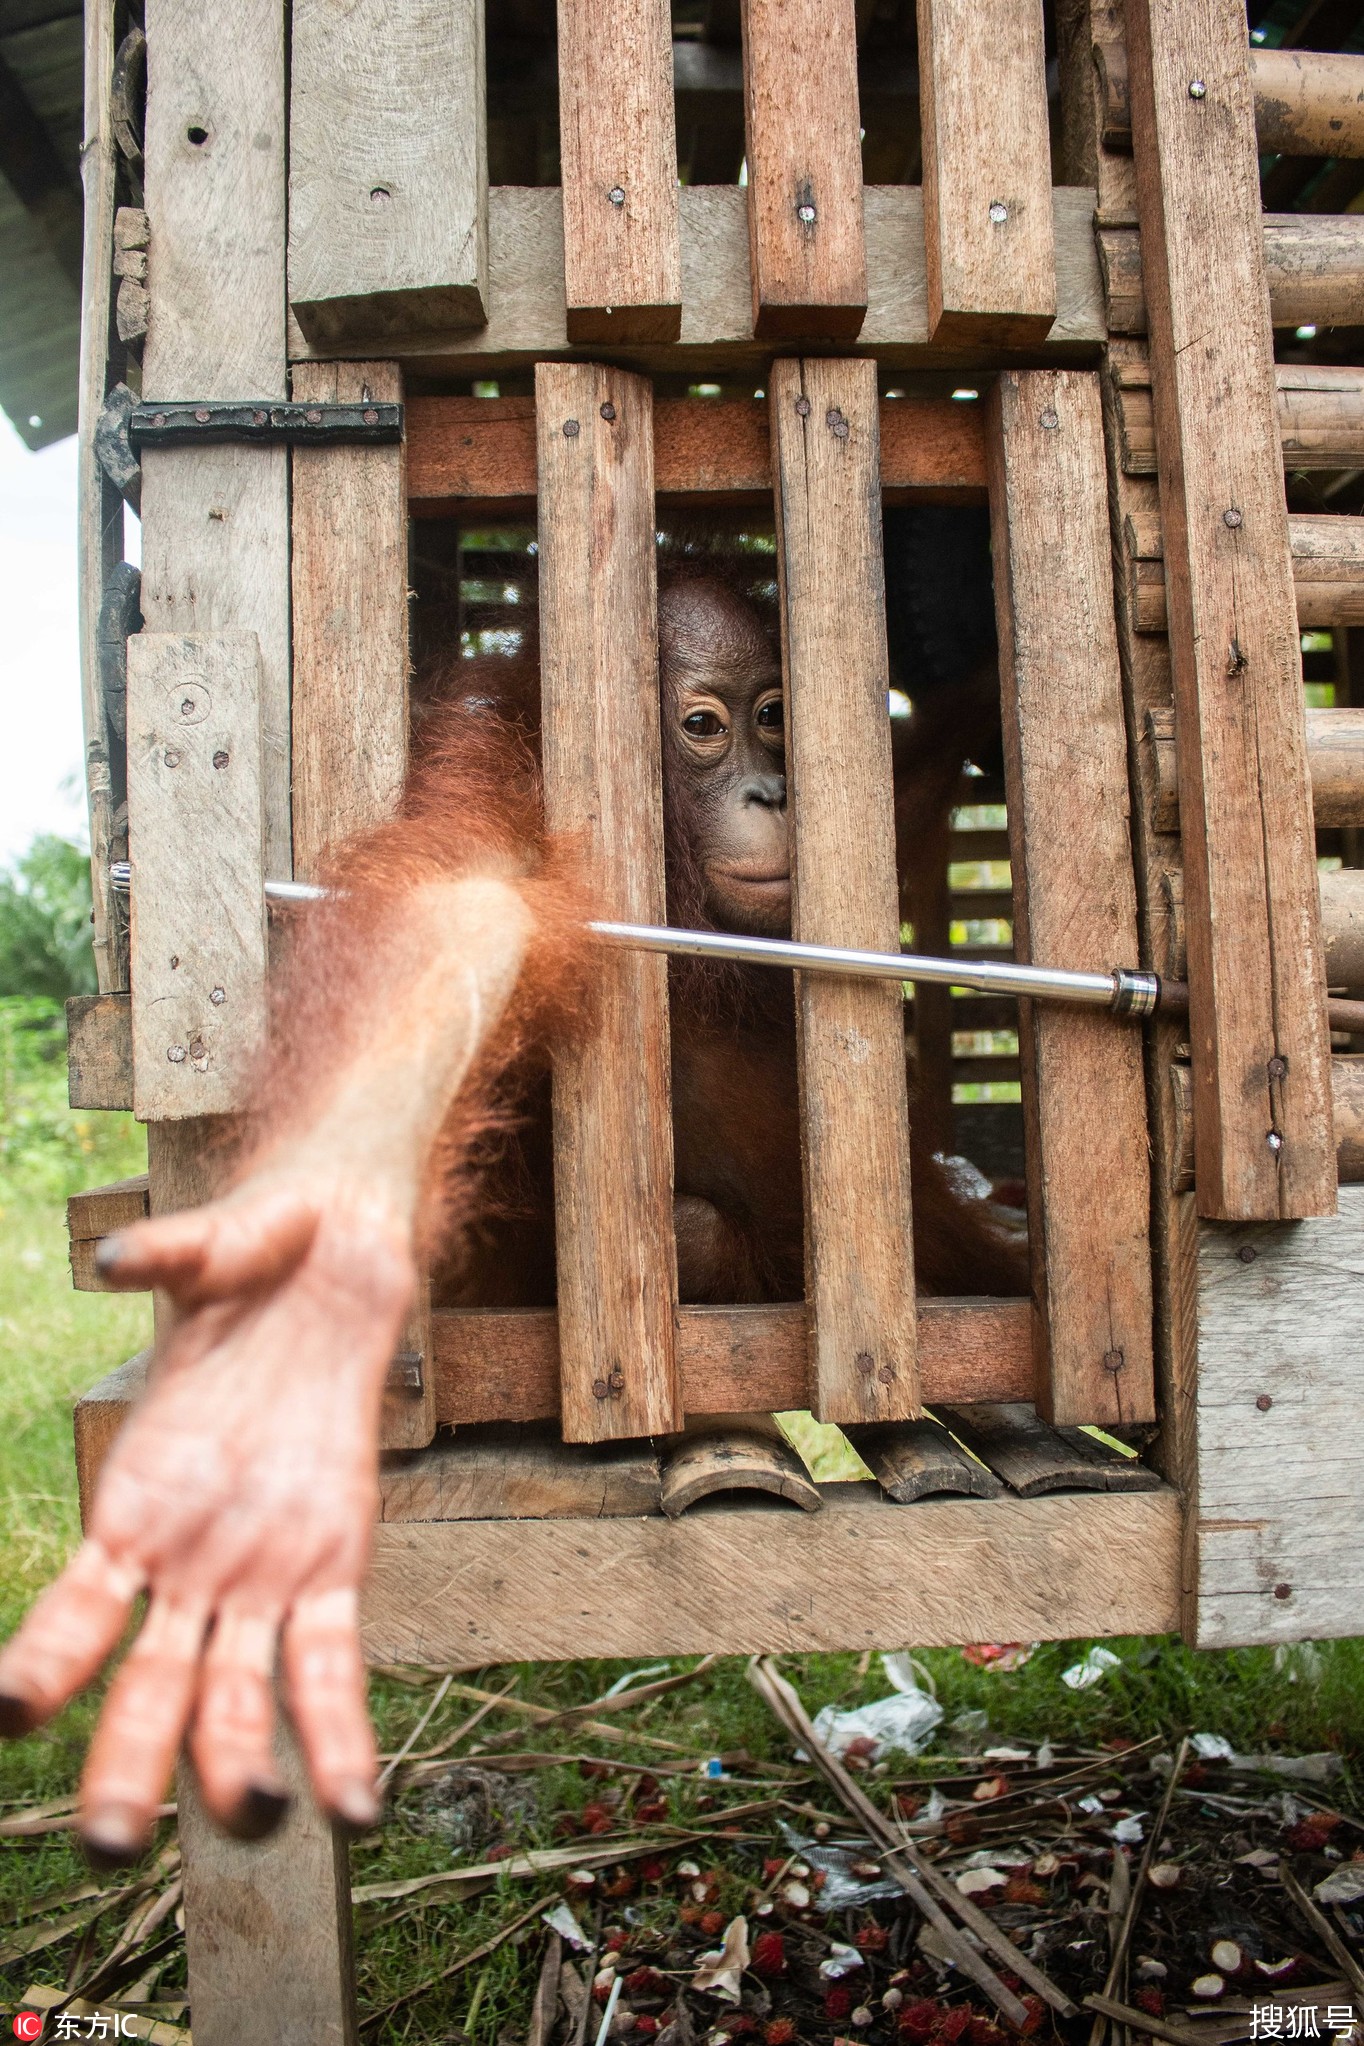 心酸!印尼红毛猩猩被囚禁小木箱近四年后重获自由